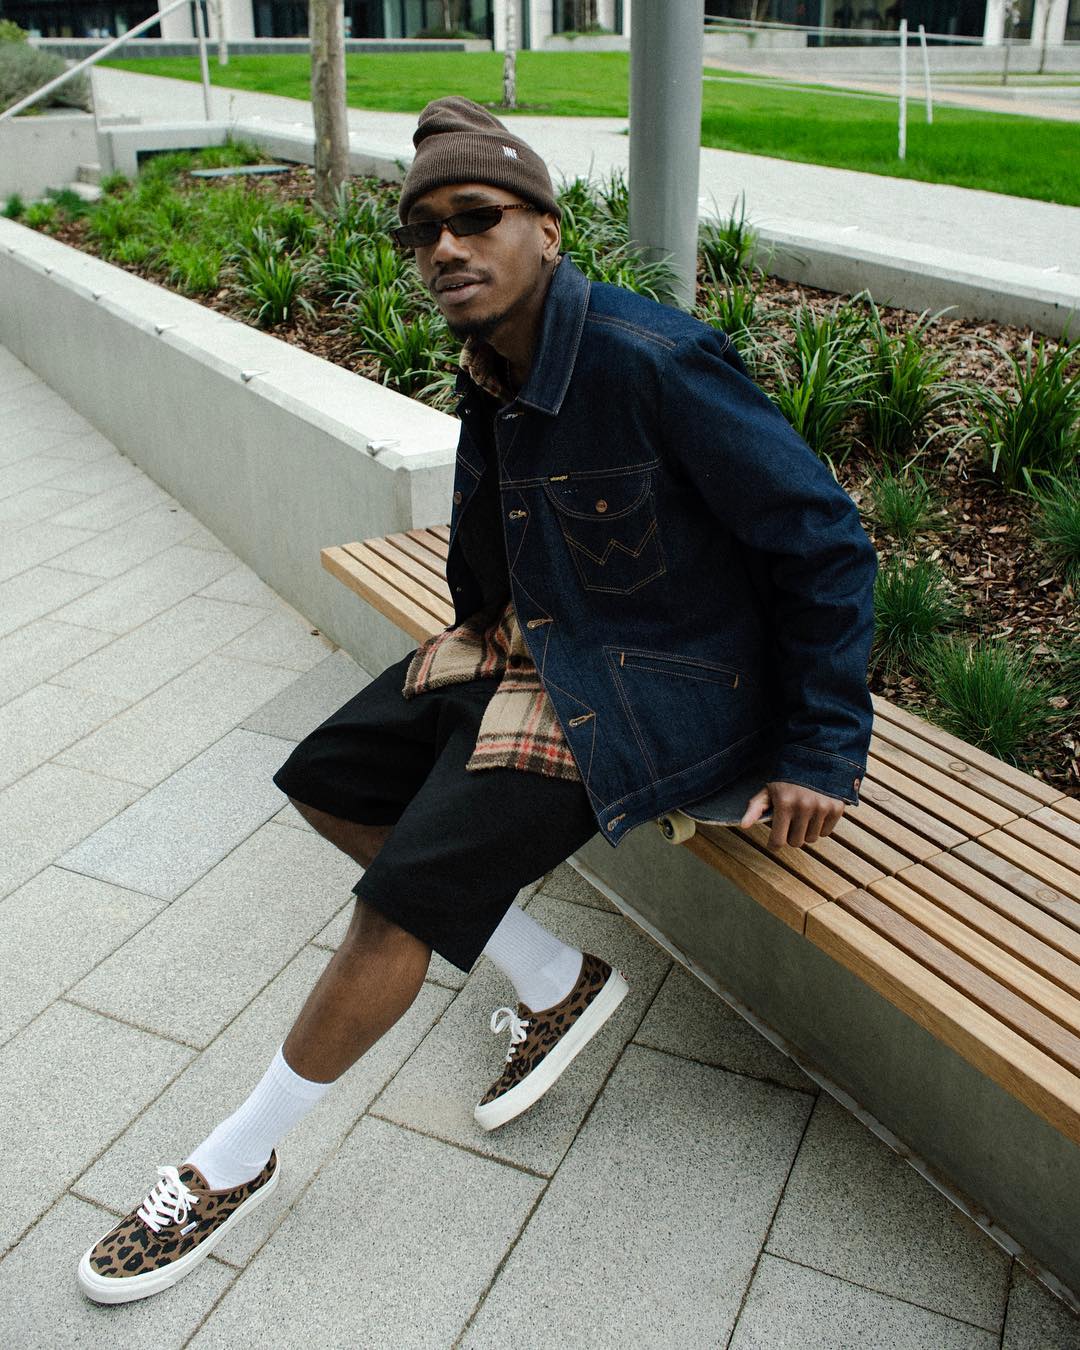 Der ASOS Insider Joshua posiert in Shorts für ein Streetstyle-Photo